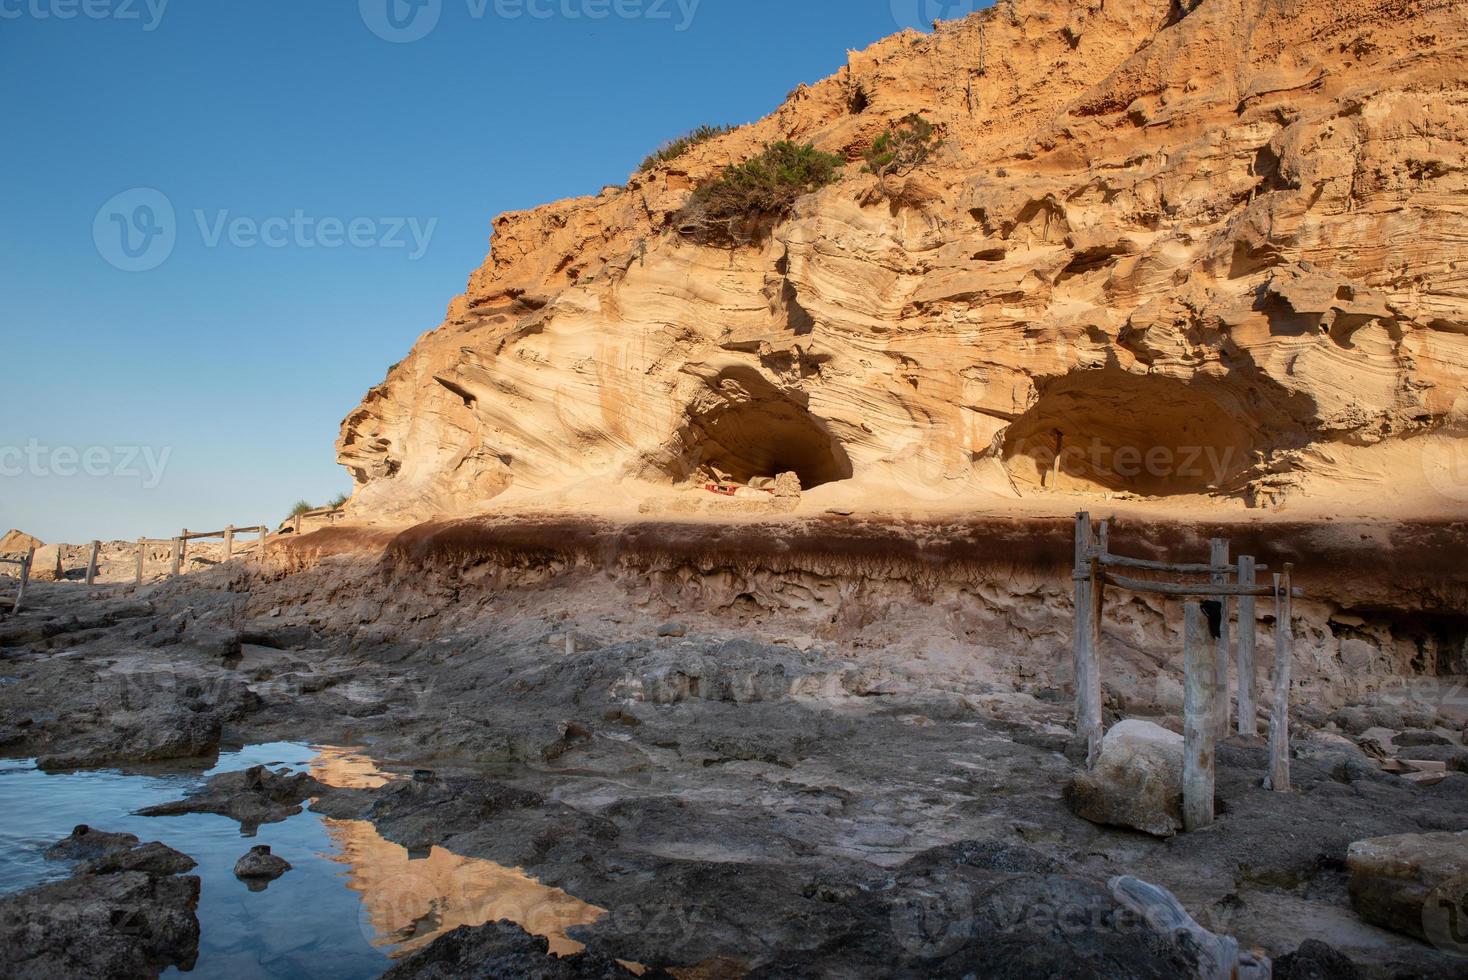 vackra Cala d en baster på ön formentera på de baleariska öarna i Spanien foto